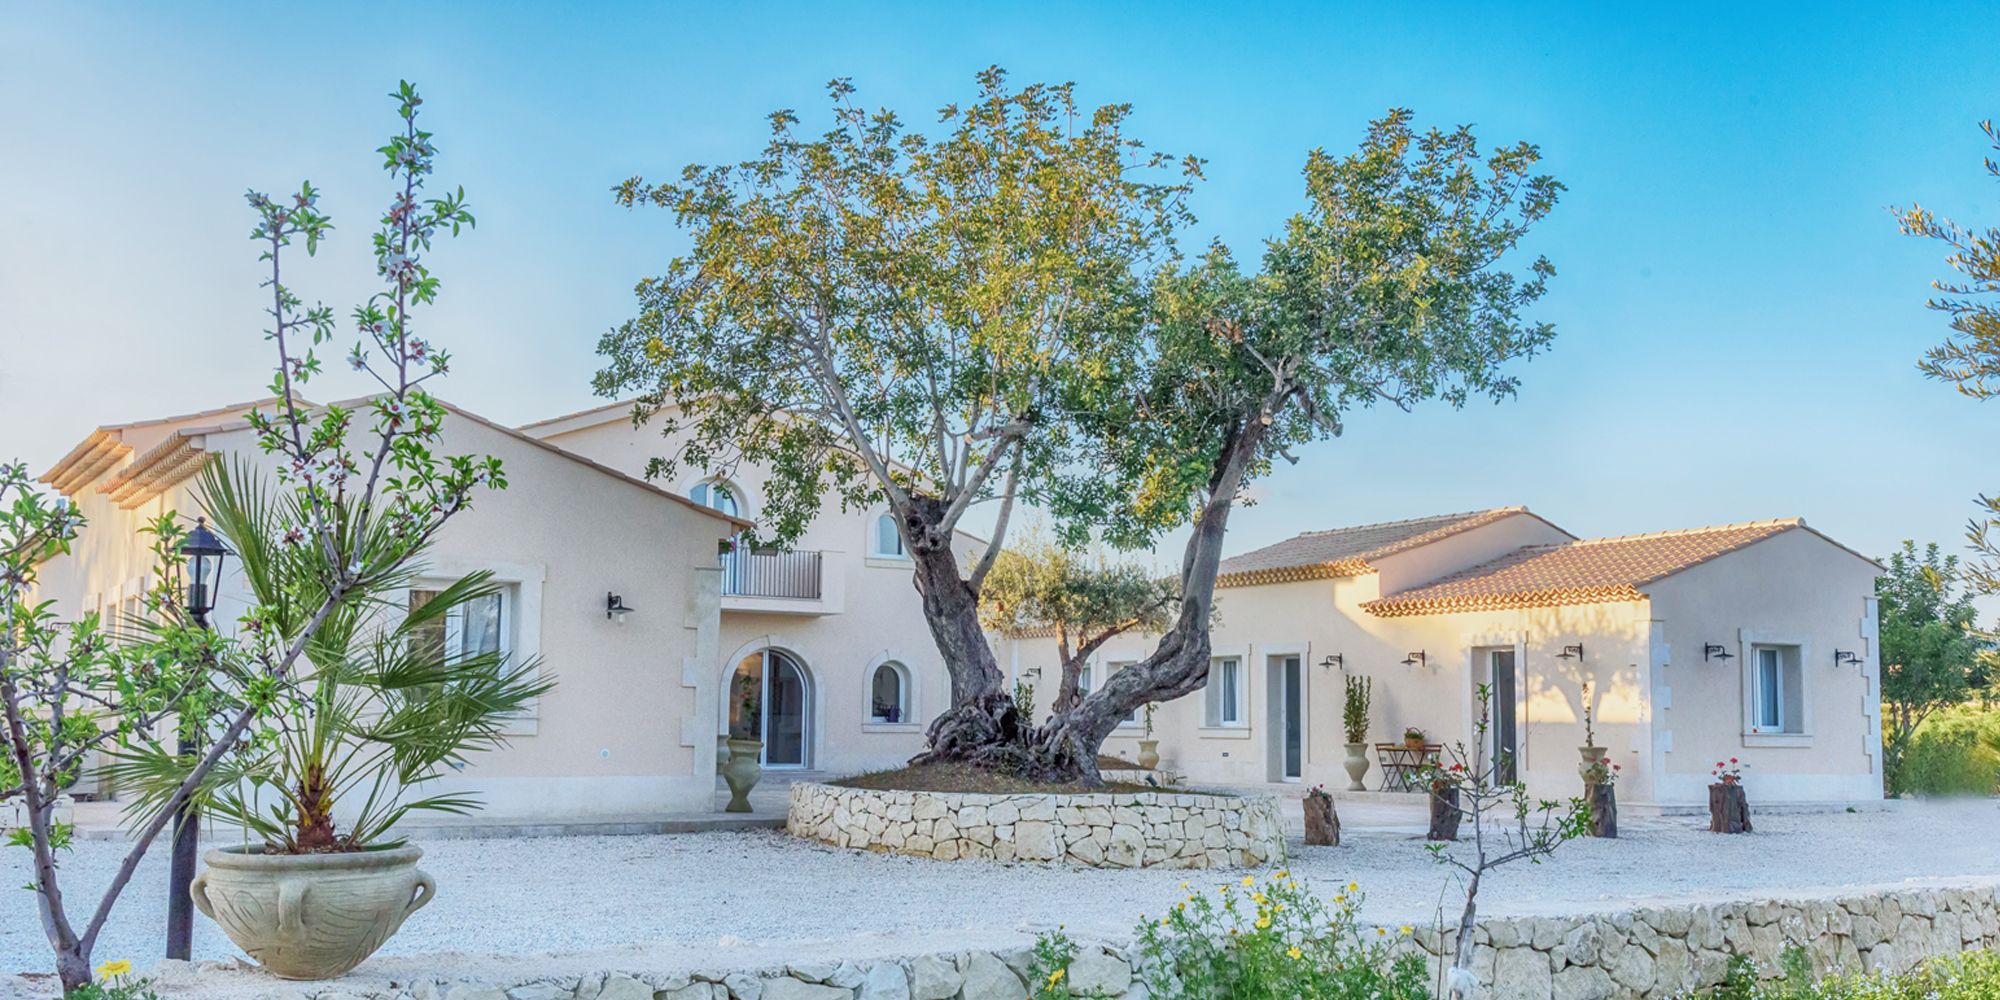 Scopri e vivi la Sicilia come meta delle tue vacanze, fallo in modo speciale, con Airbnb e le Experience potrai entrare a stretto contatto con i locals della Val di Noto e imparare a cucinare i cannoli siciliani e la caponata.